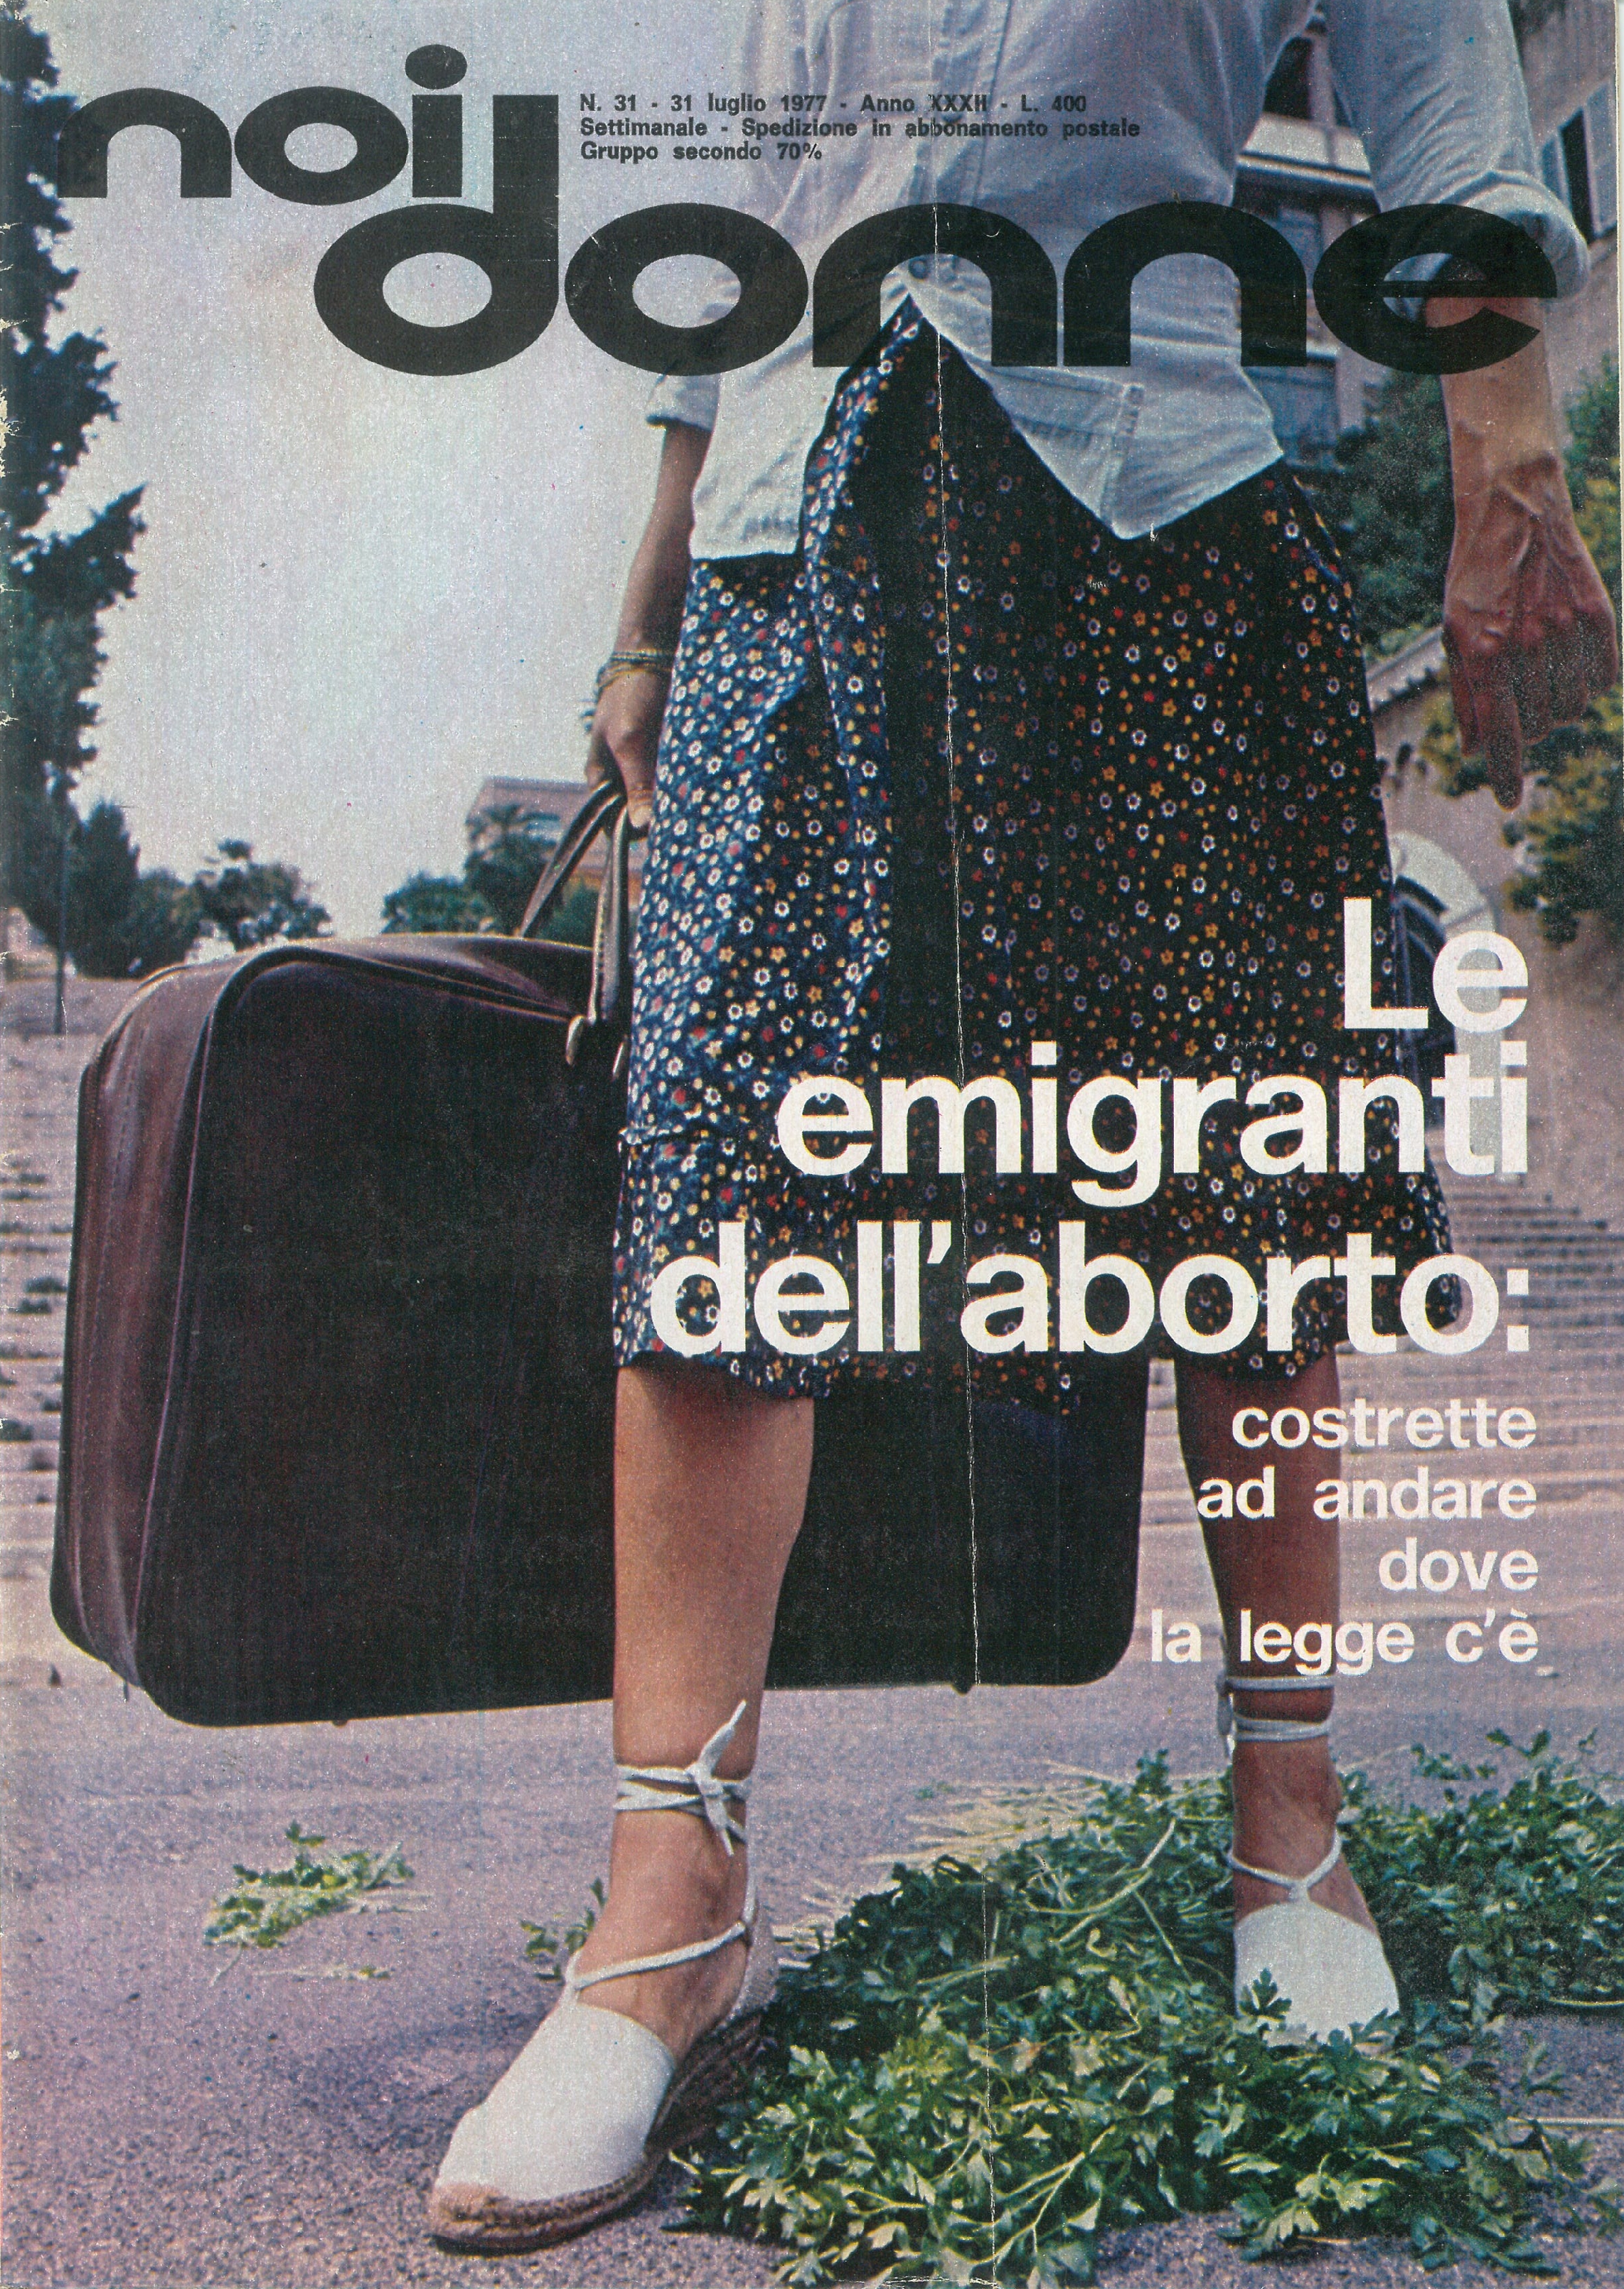 Foto: Le emigranti dell'aborto